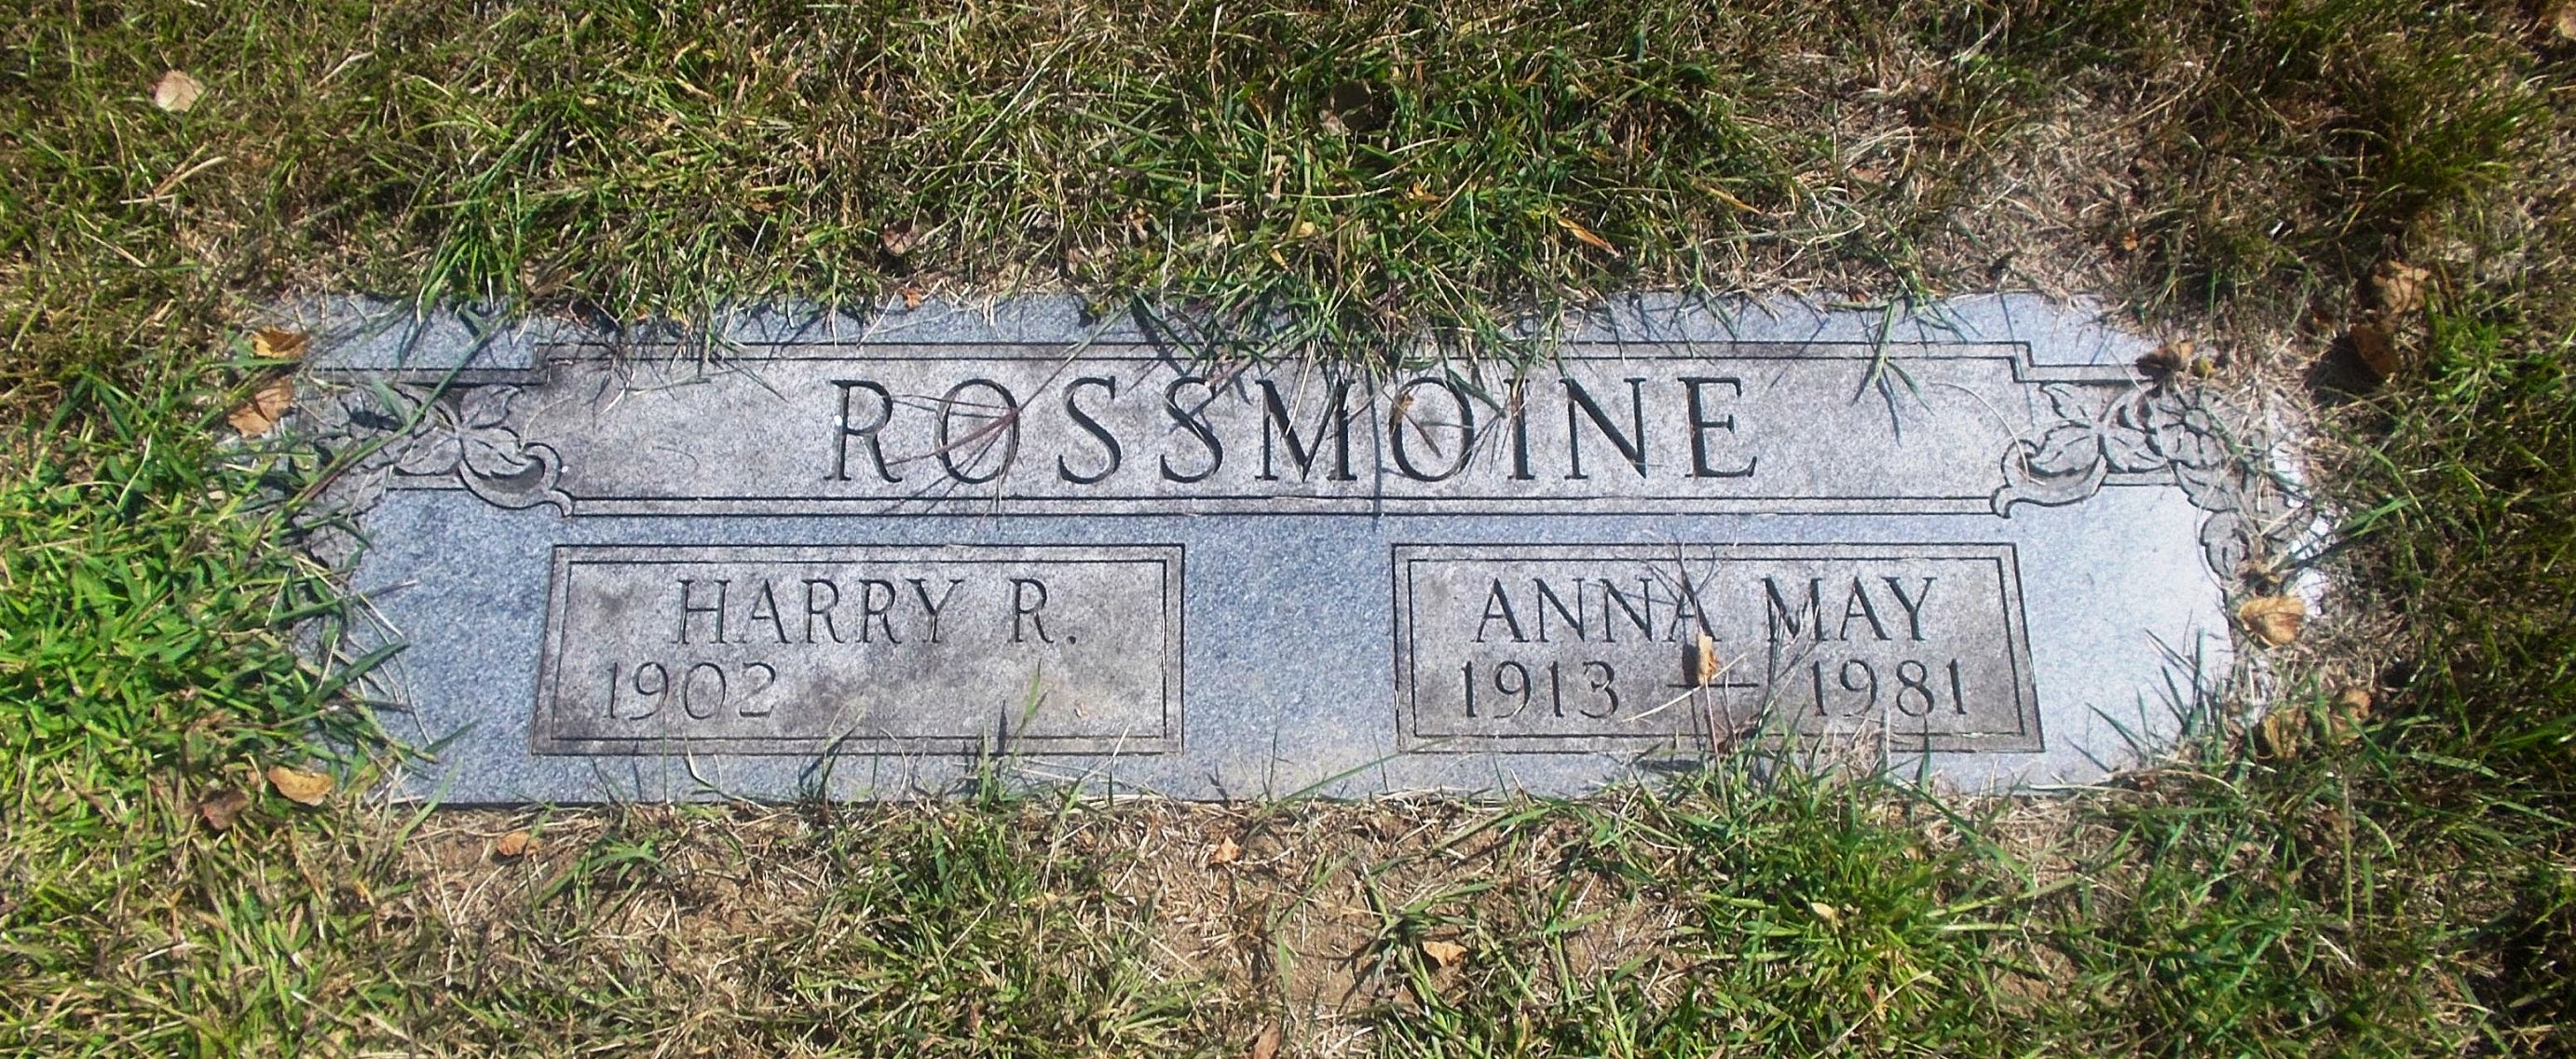 Harry R Rossmoine